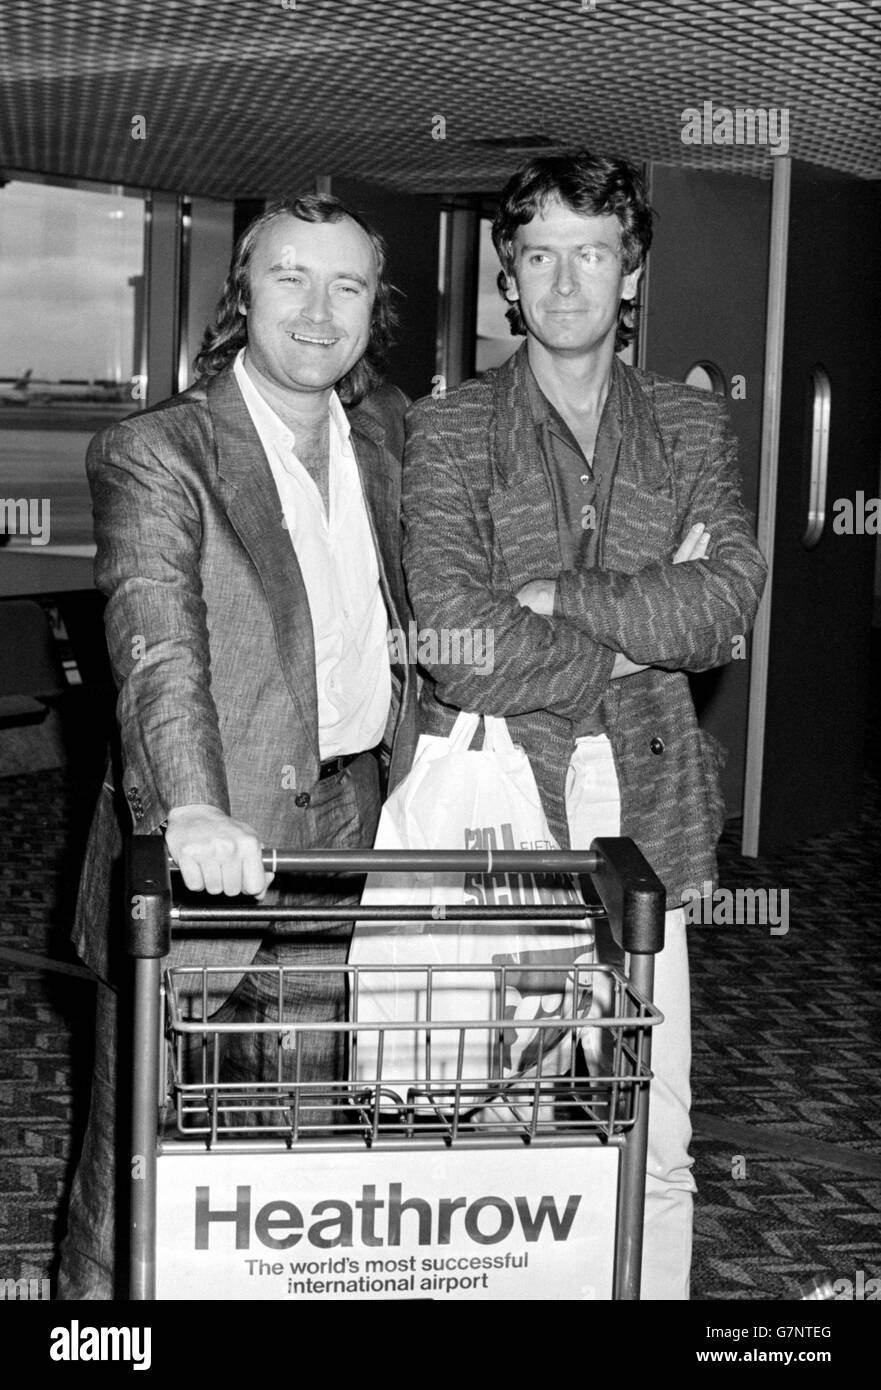 Genesis kehrt aus den USA zurück. Phil Collins und Tony Banks of Genesis am Flughafen Heathrow nach ihrer Amerikatour. Stockfoto